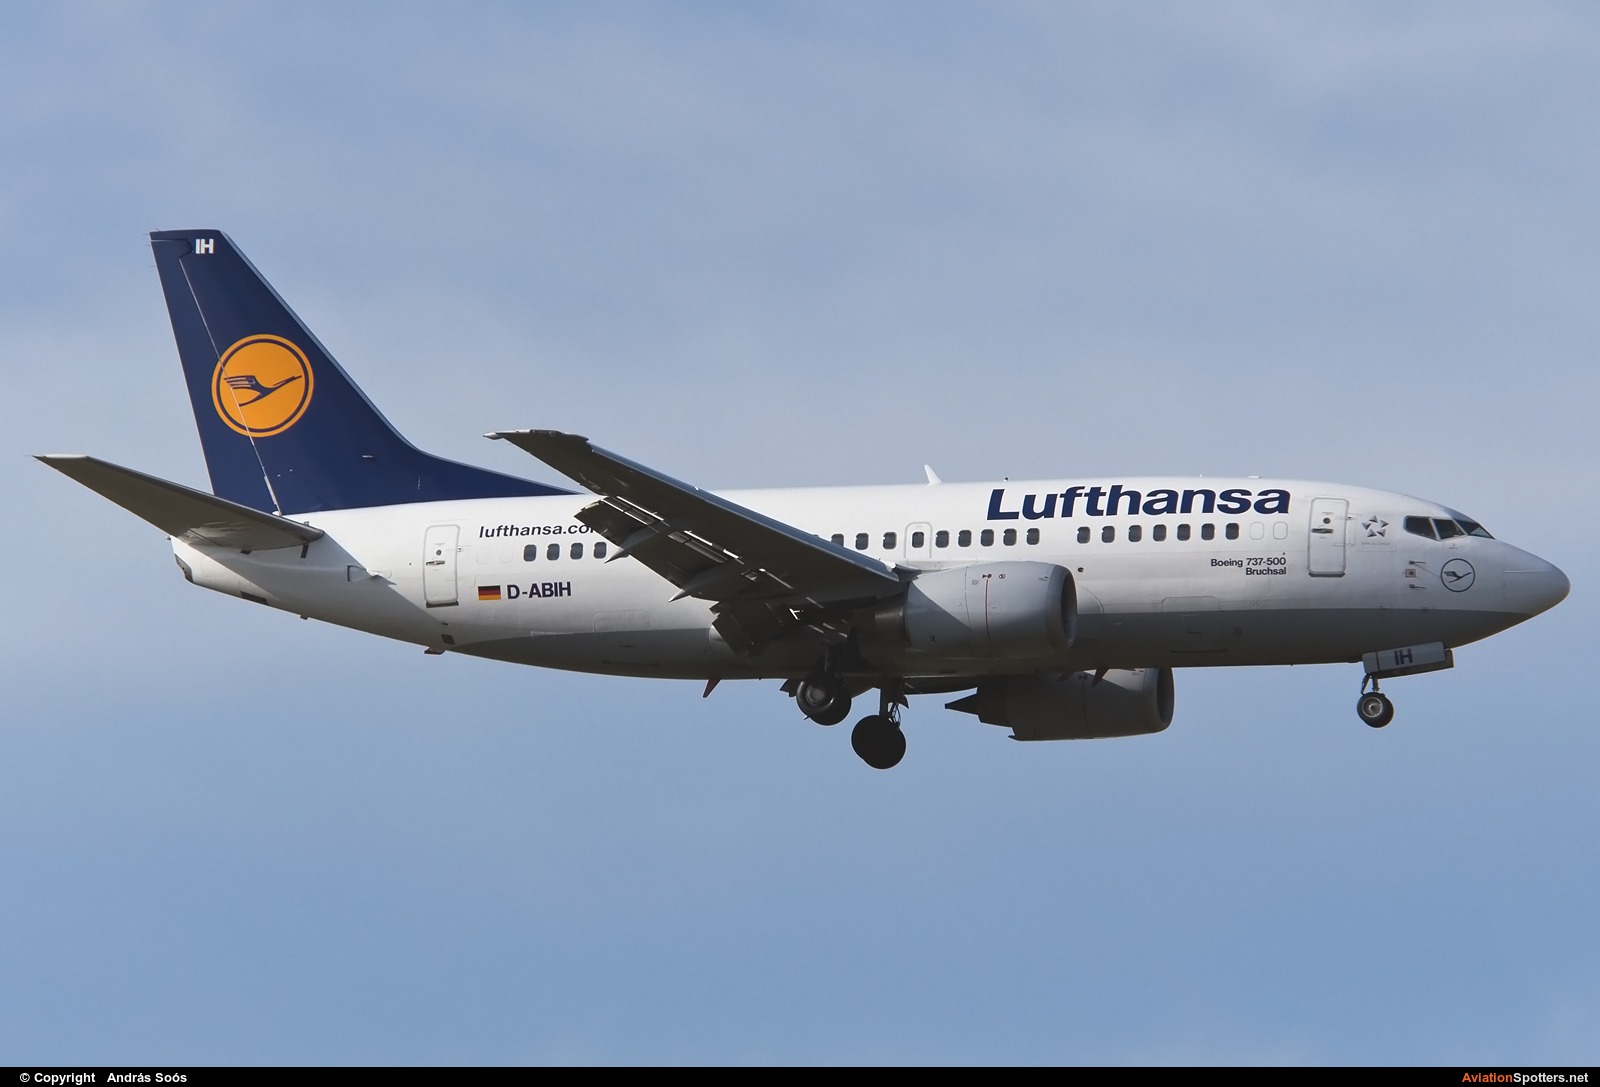 Lufthansa  -  737-500  (D-ABIH) By András Soós (sas1965)